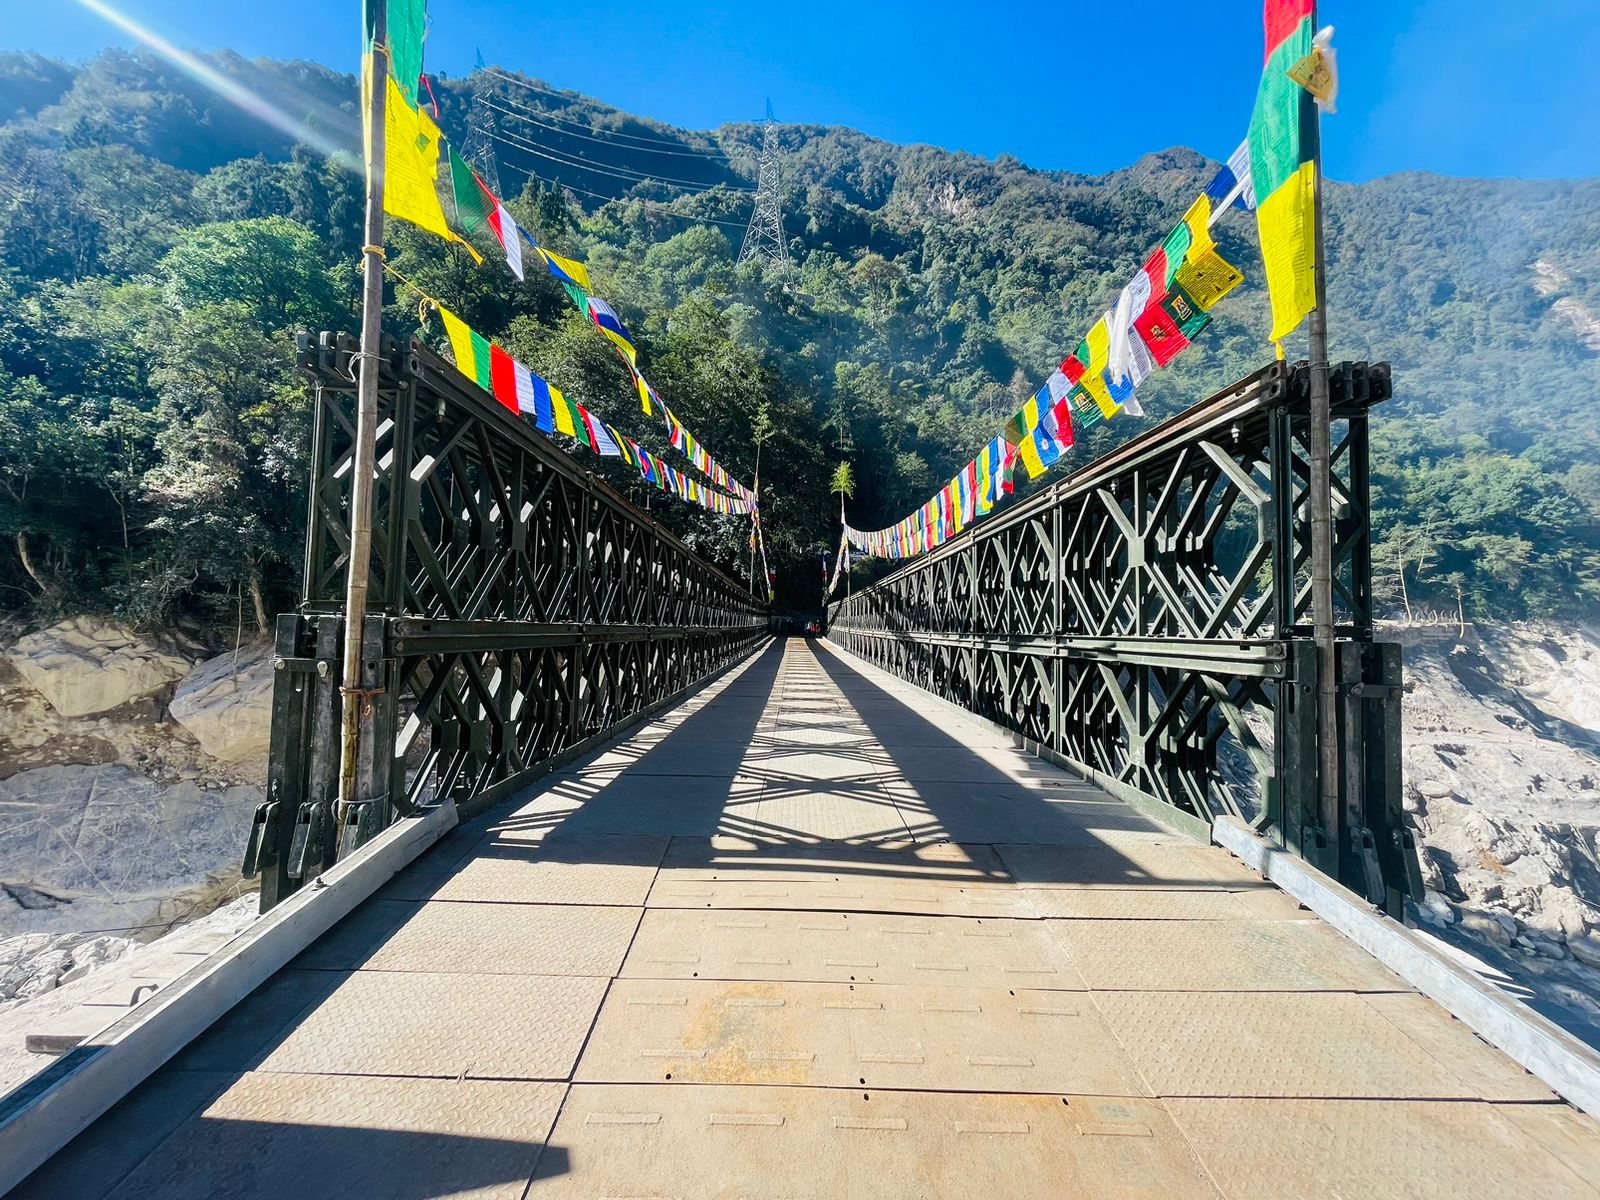 Bailey Bridge in Sikkim